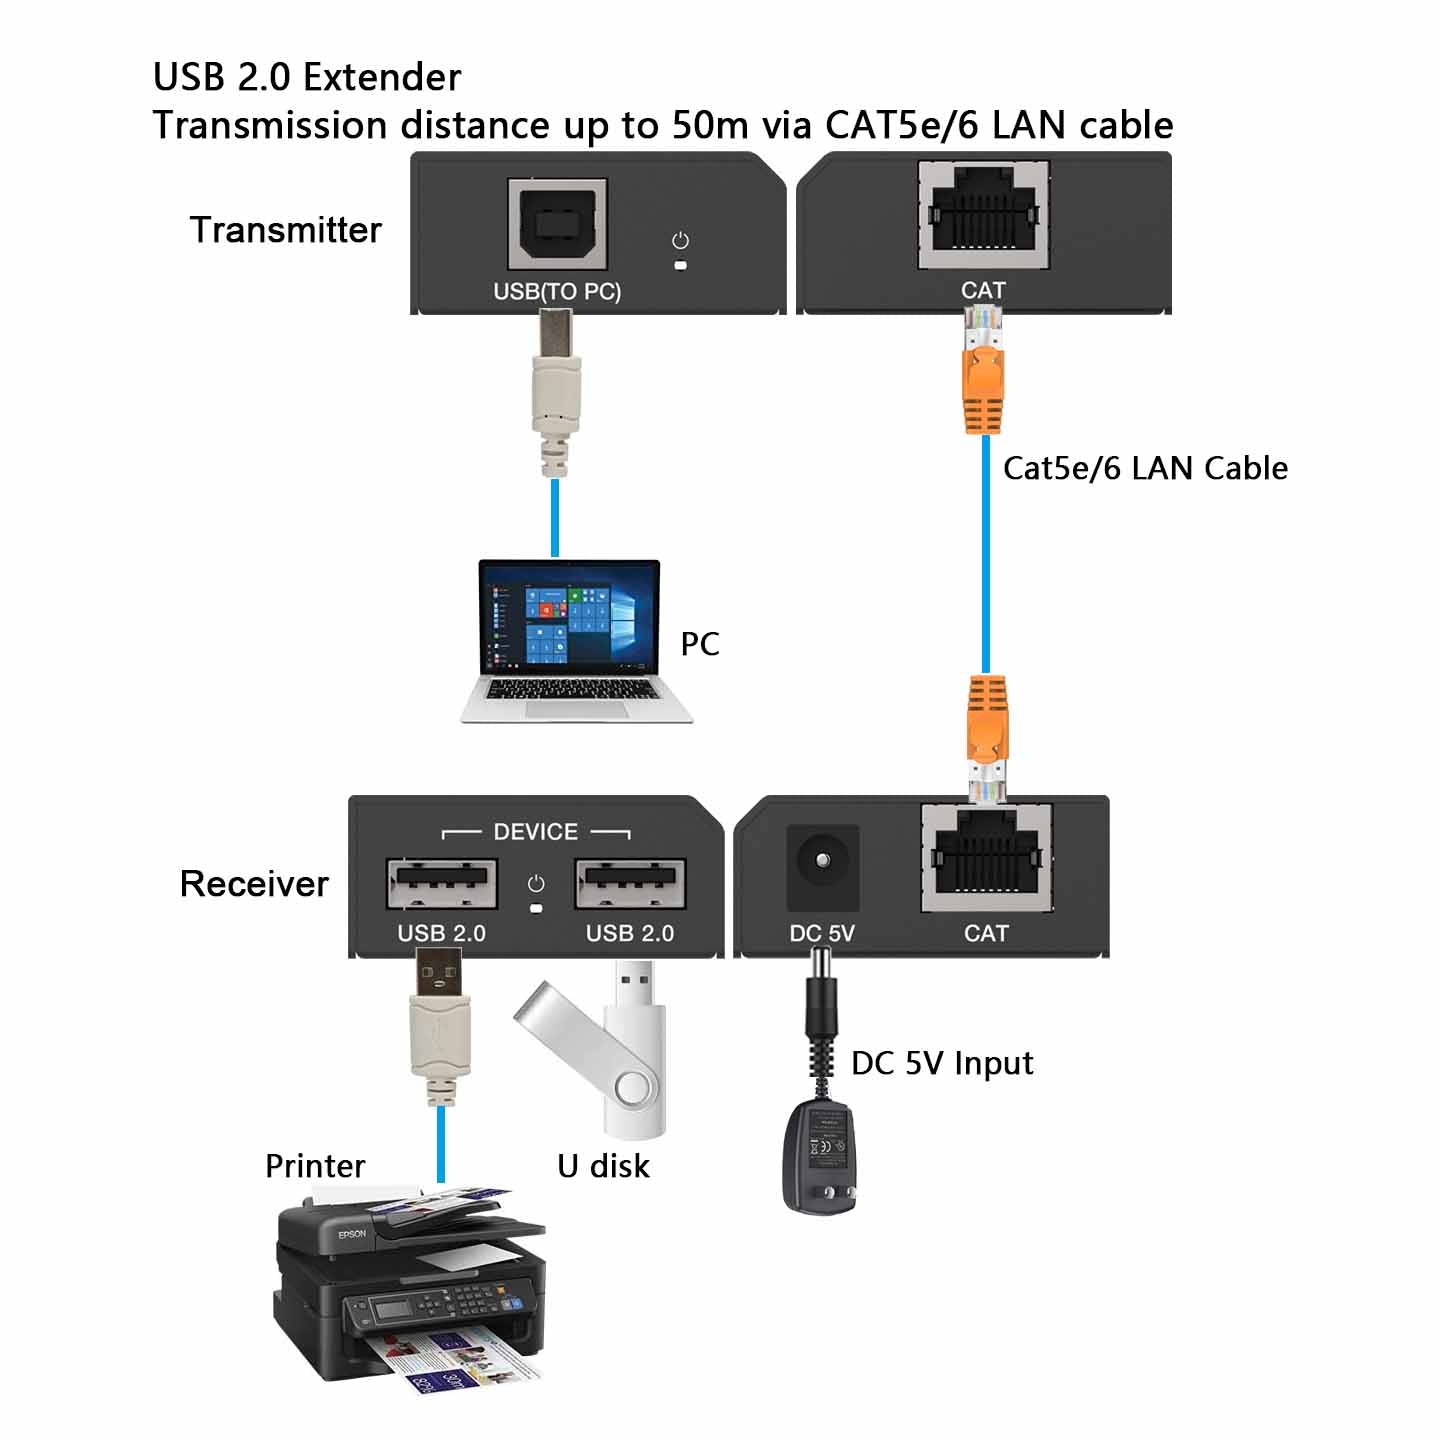 USB 2.0 Extender via CAT5e/6 LAN cable 50m transmission connection